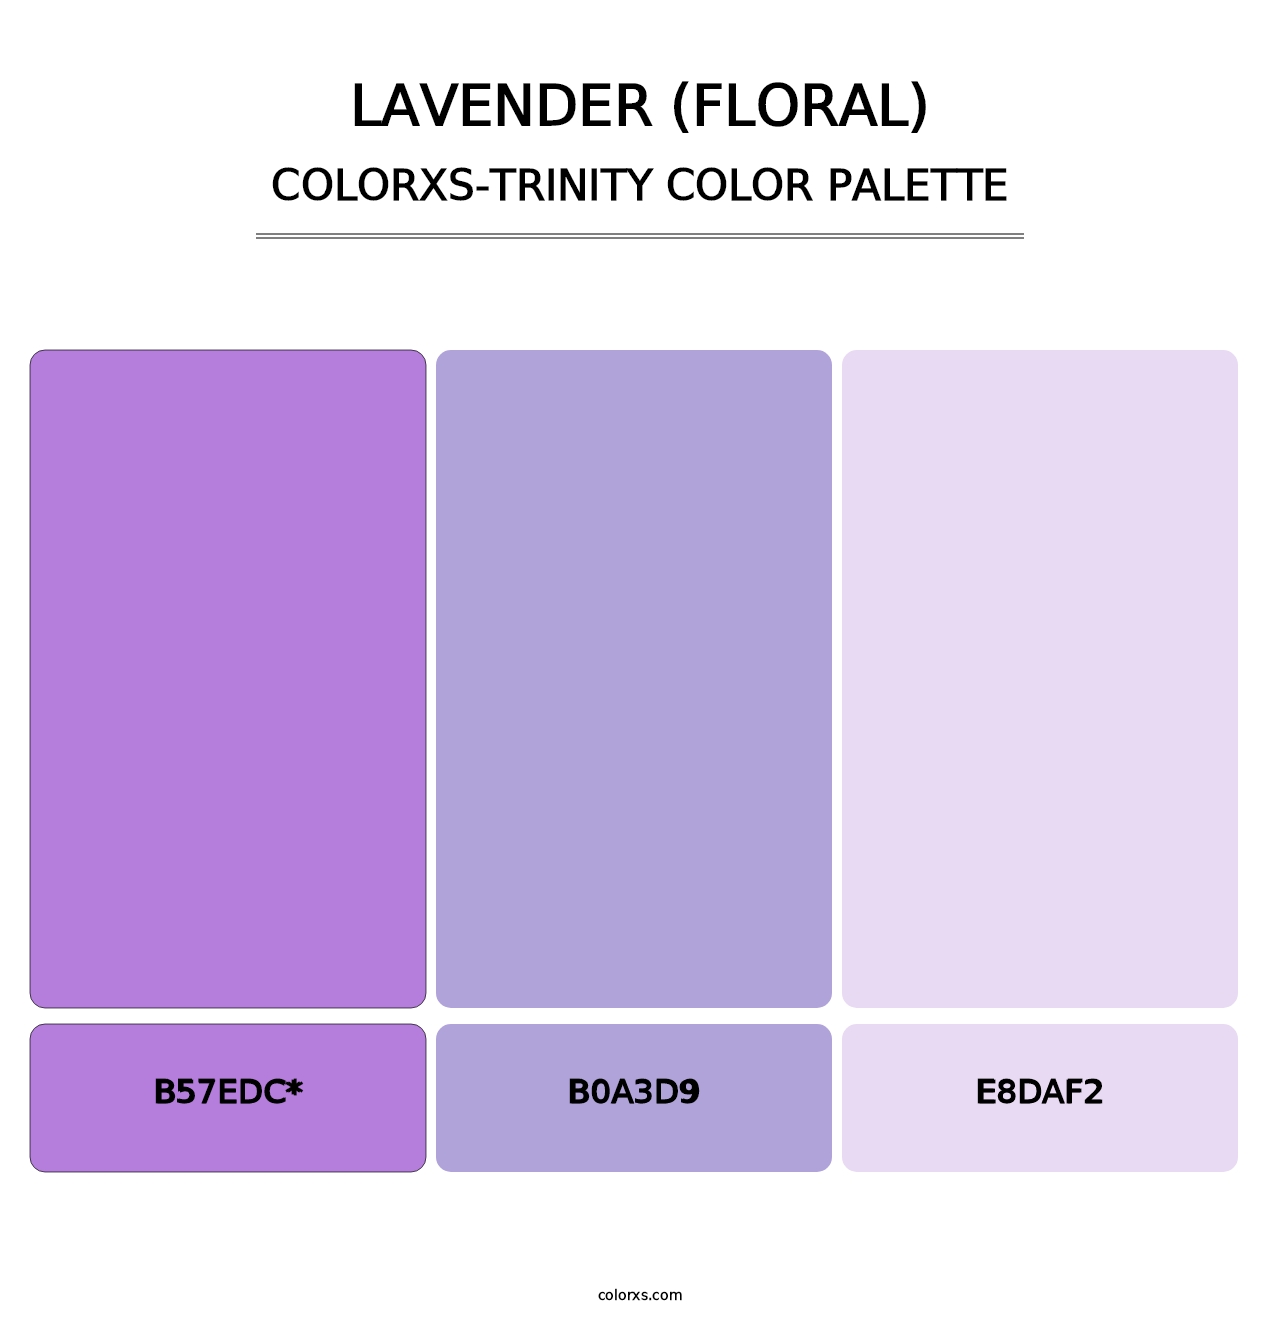 Lavender (Floral) - Colorxs Trinity Palette